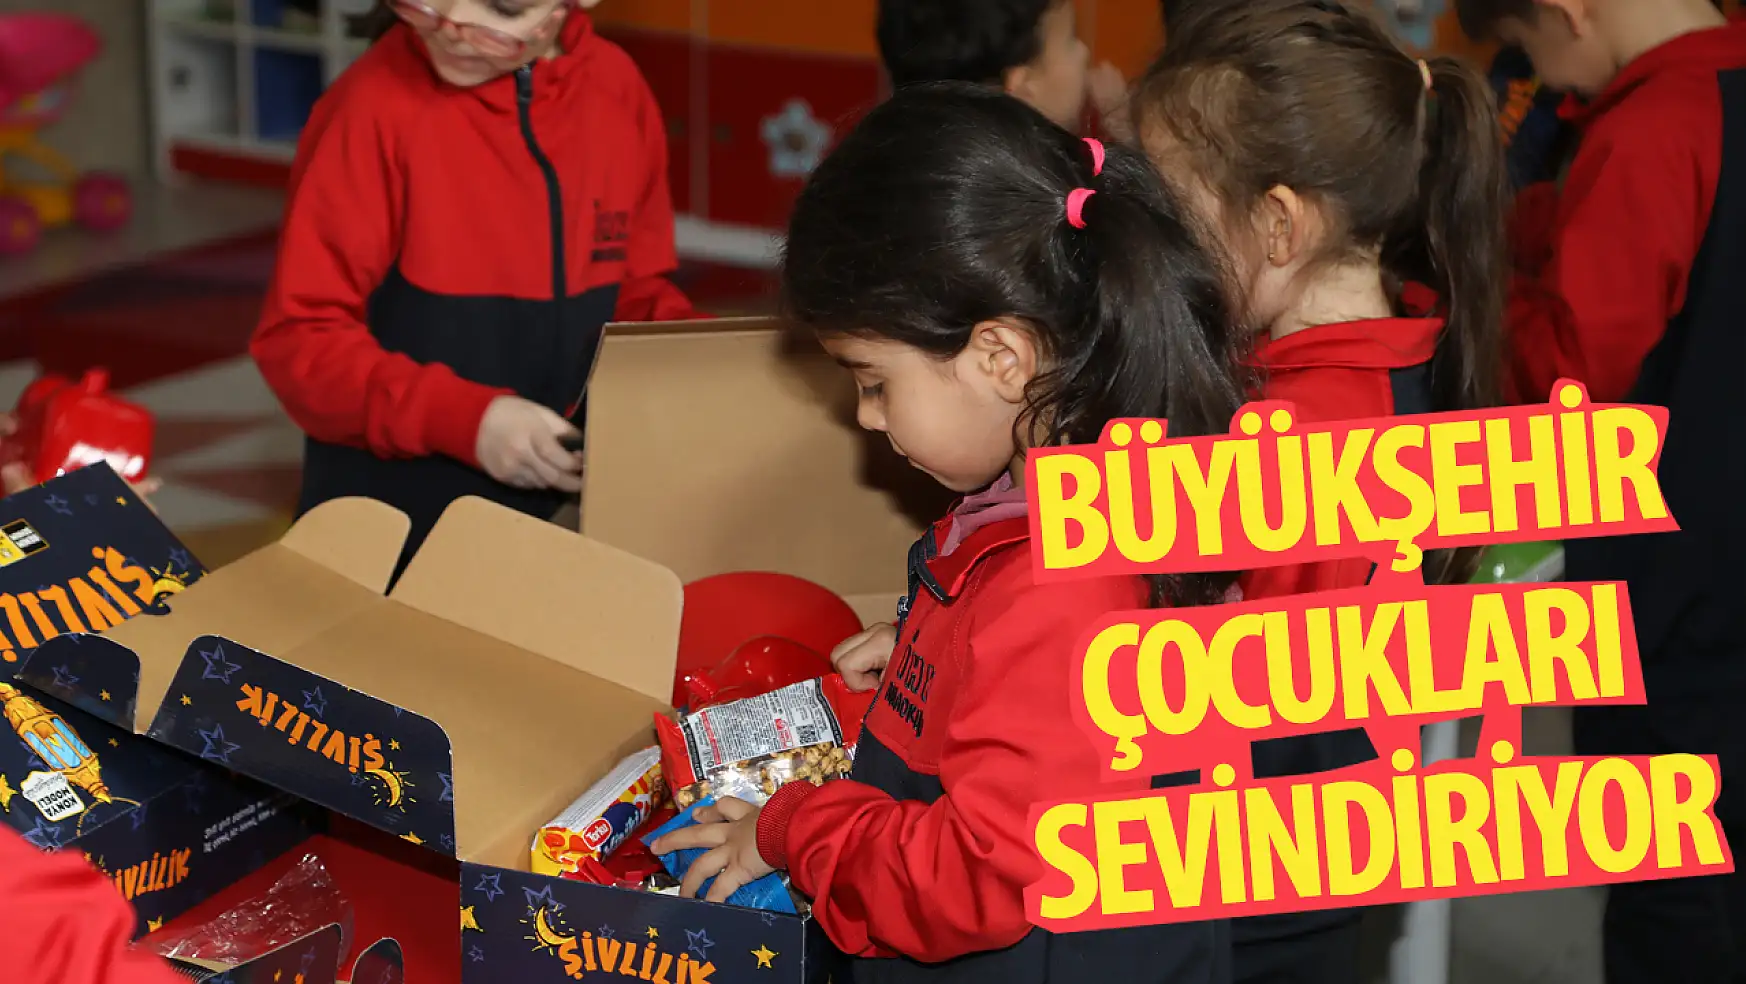 Konya Büyükşehir Belediyesi, Çocukları Şivlilik Hediyeleriyle Sevindiriyor